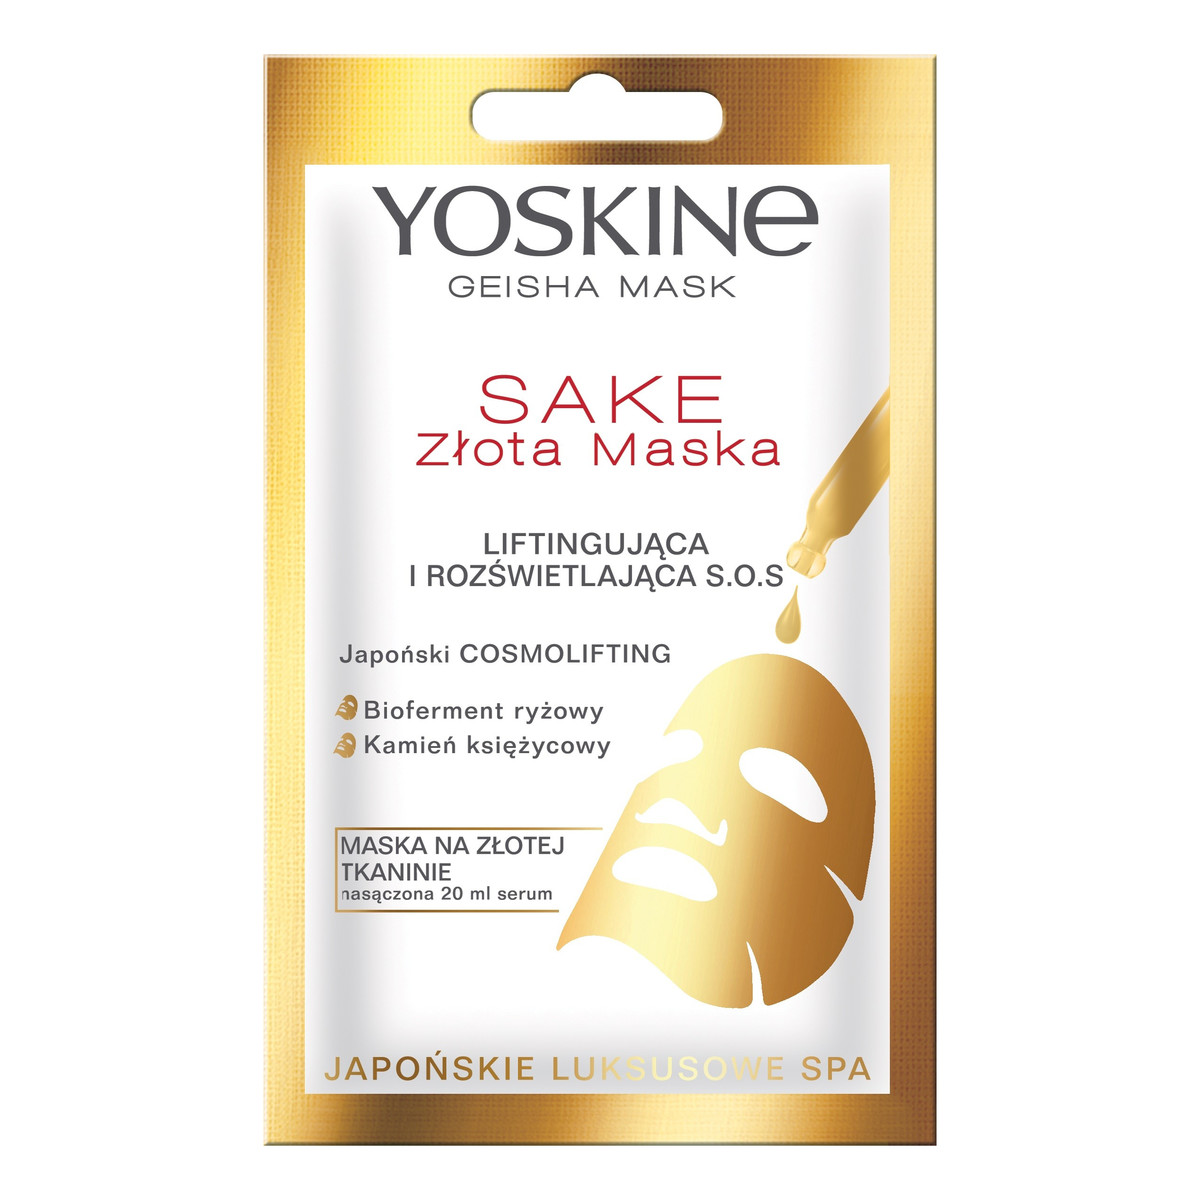 Yoskine Geisha Mask Sake Złota Maska na tkaninie liftingująca i rozświetlająca S.O.S. 20ml